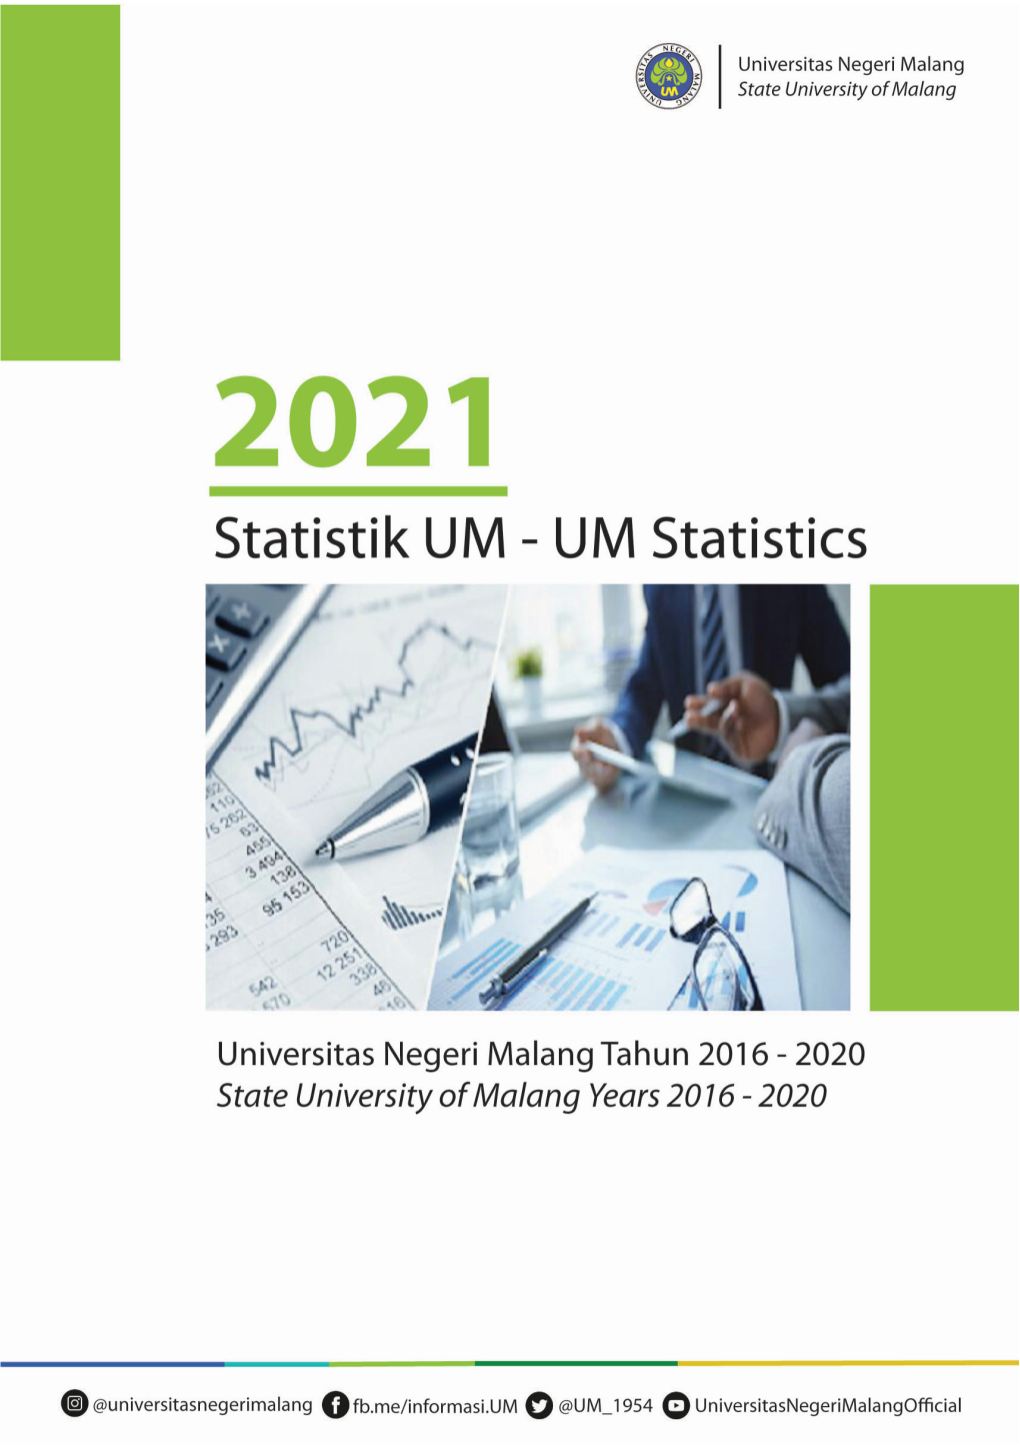 Statistik Perkembangan UM Tahun 2016-2020